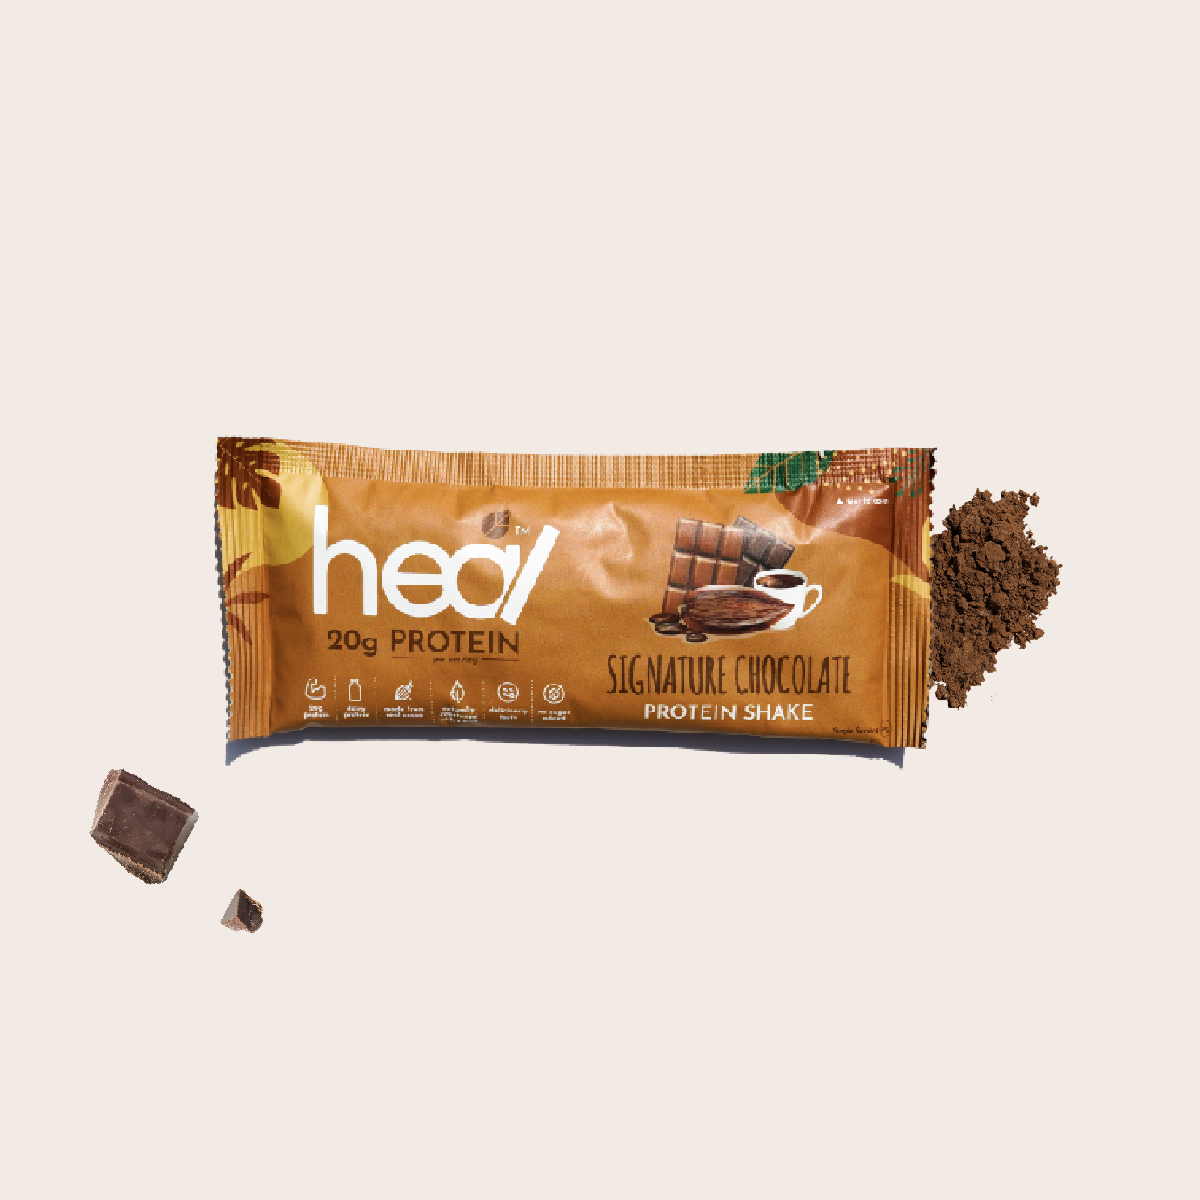 Heal Signature Chocolate Protein Shake, Single Sachet (39g)